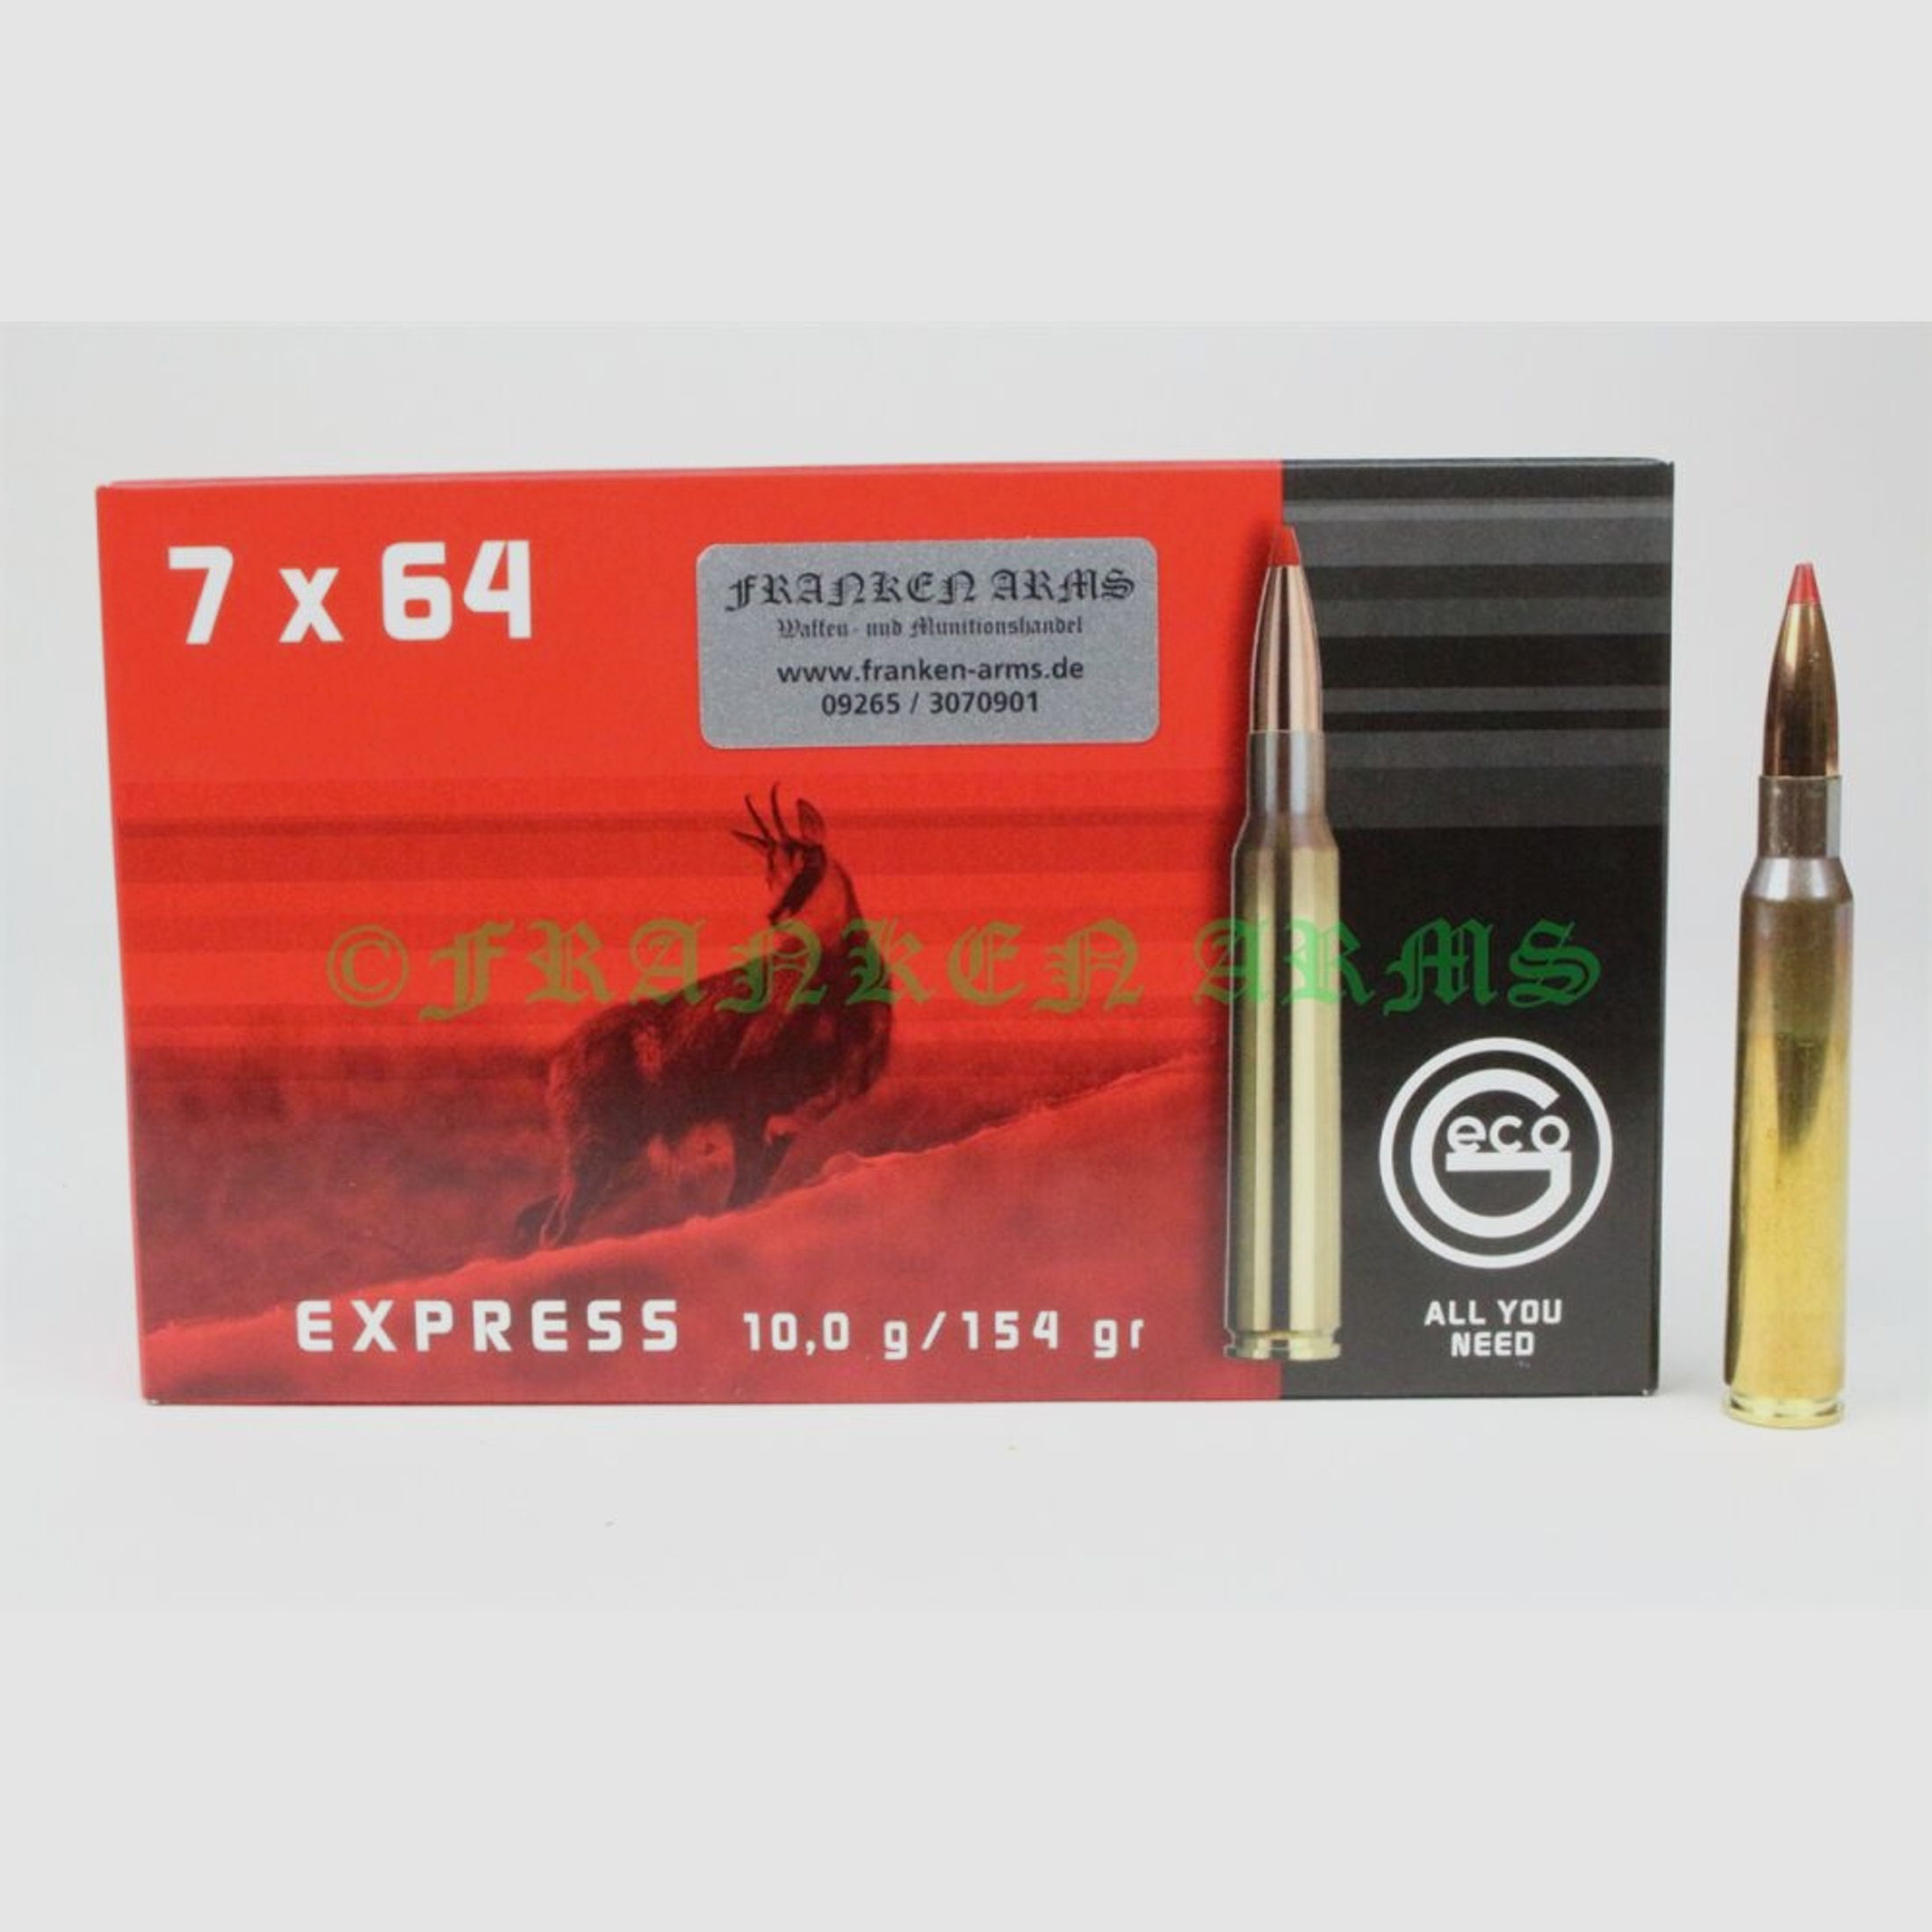 Geco	 Express 7x64 154gr. 10,0g 20 Stück Staffelpreis